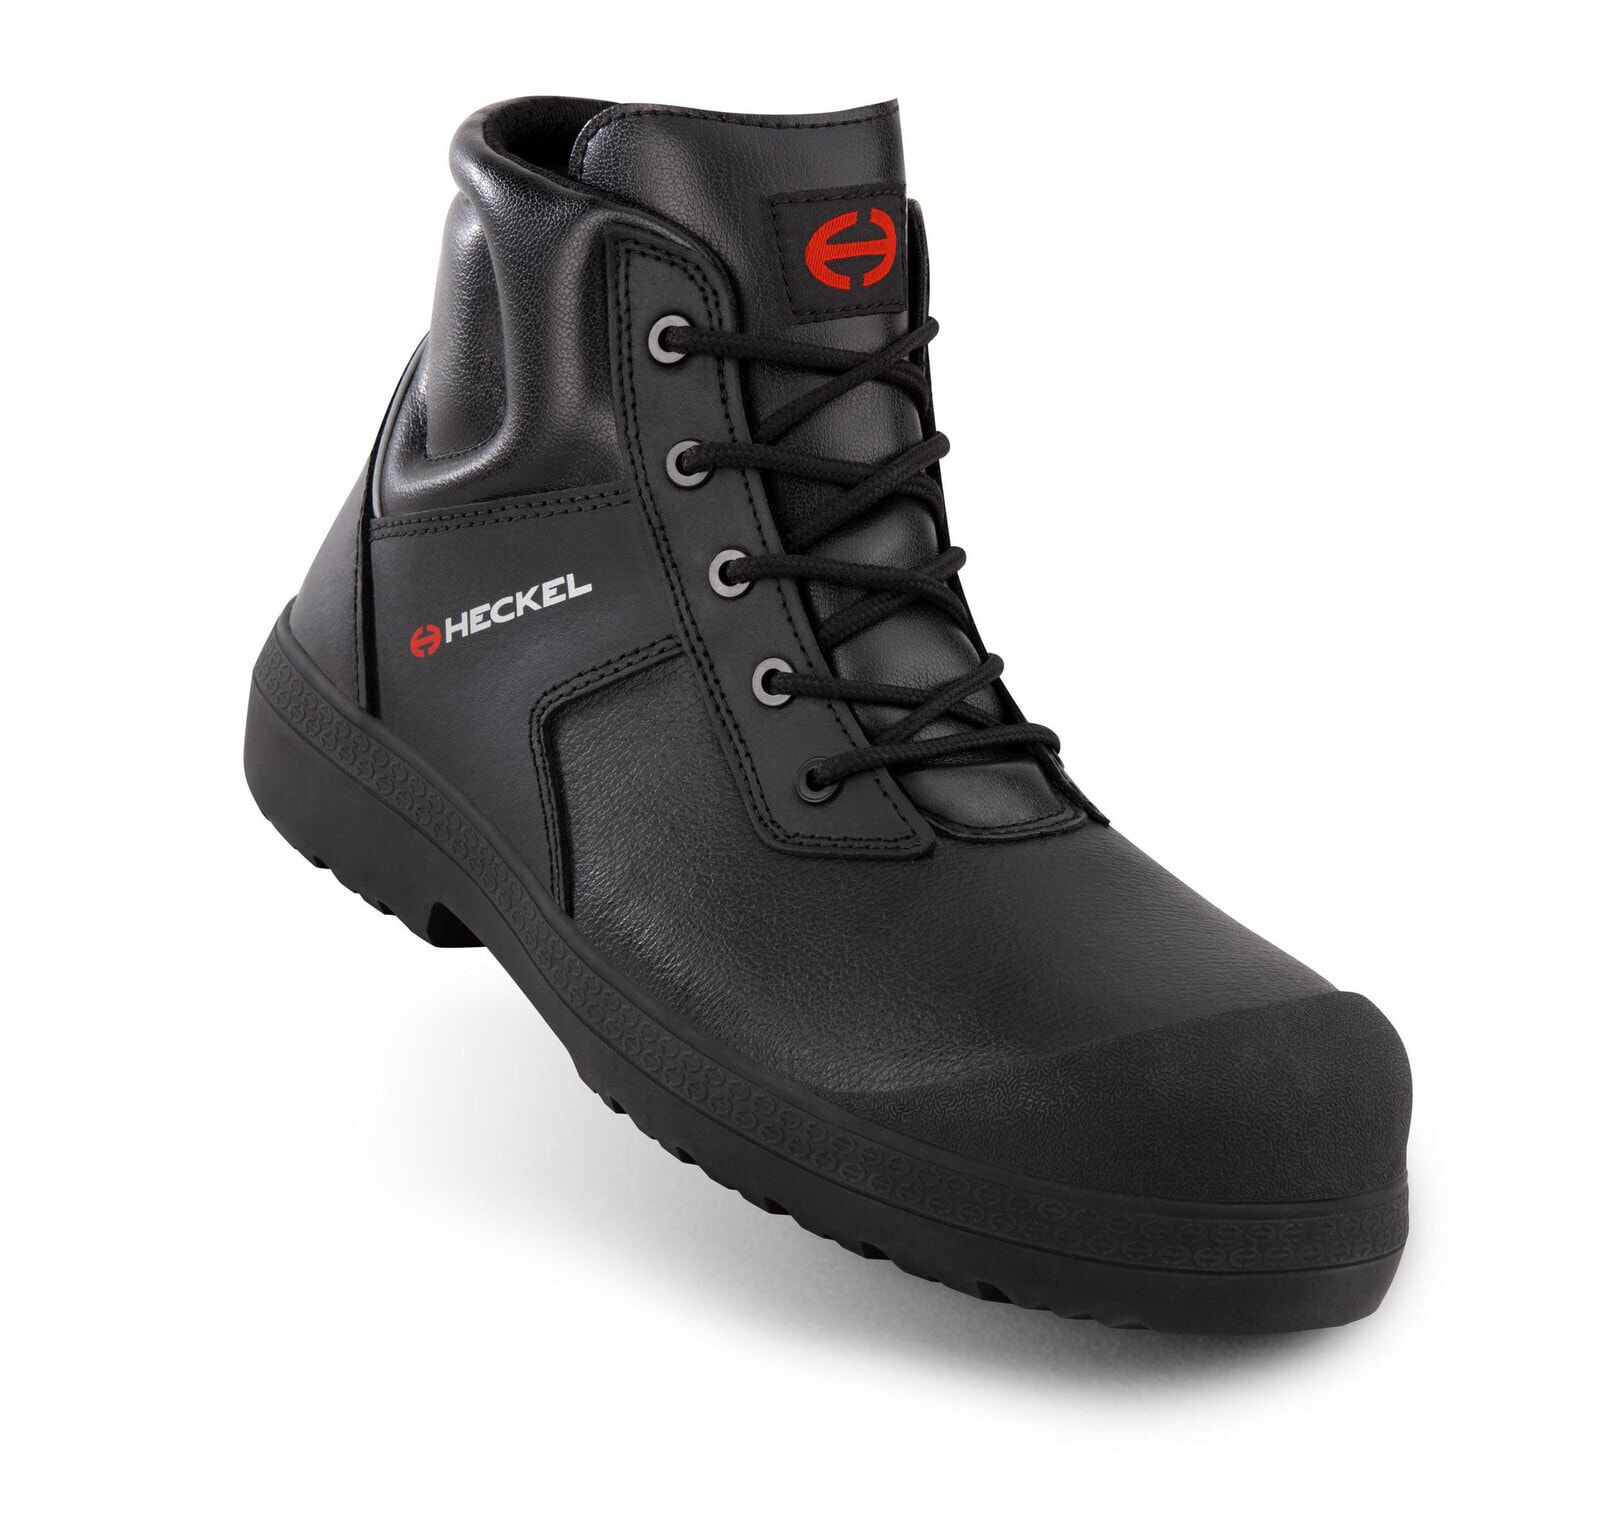 Uvex MacStopac 300 S3 - Male - Adult - Safety shoes - Black - EUE - HRO - EN - S3 - SRC